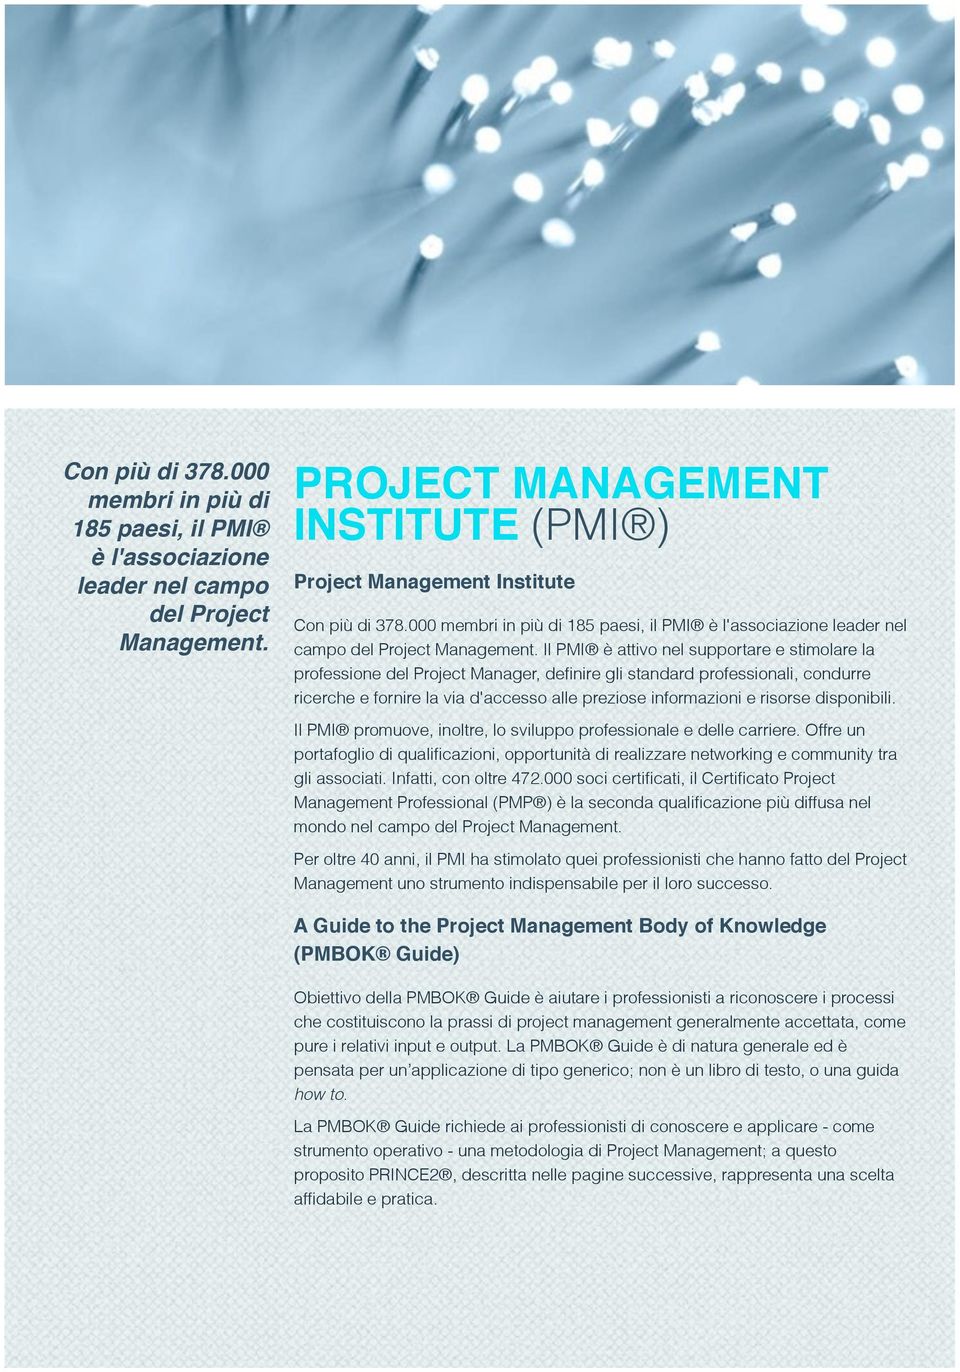 Il PMI è attivo nel supportare e stimolare la professione del Project Manager, definire gli standard professionali, condurre ricerche e fornire la via d'accesso alle preziose informazioni e risorse